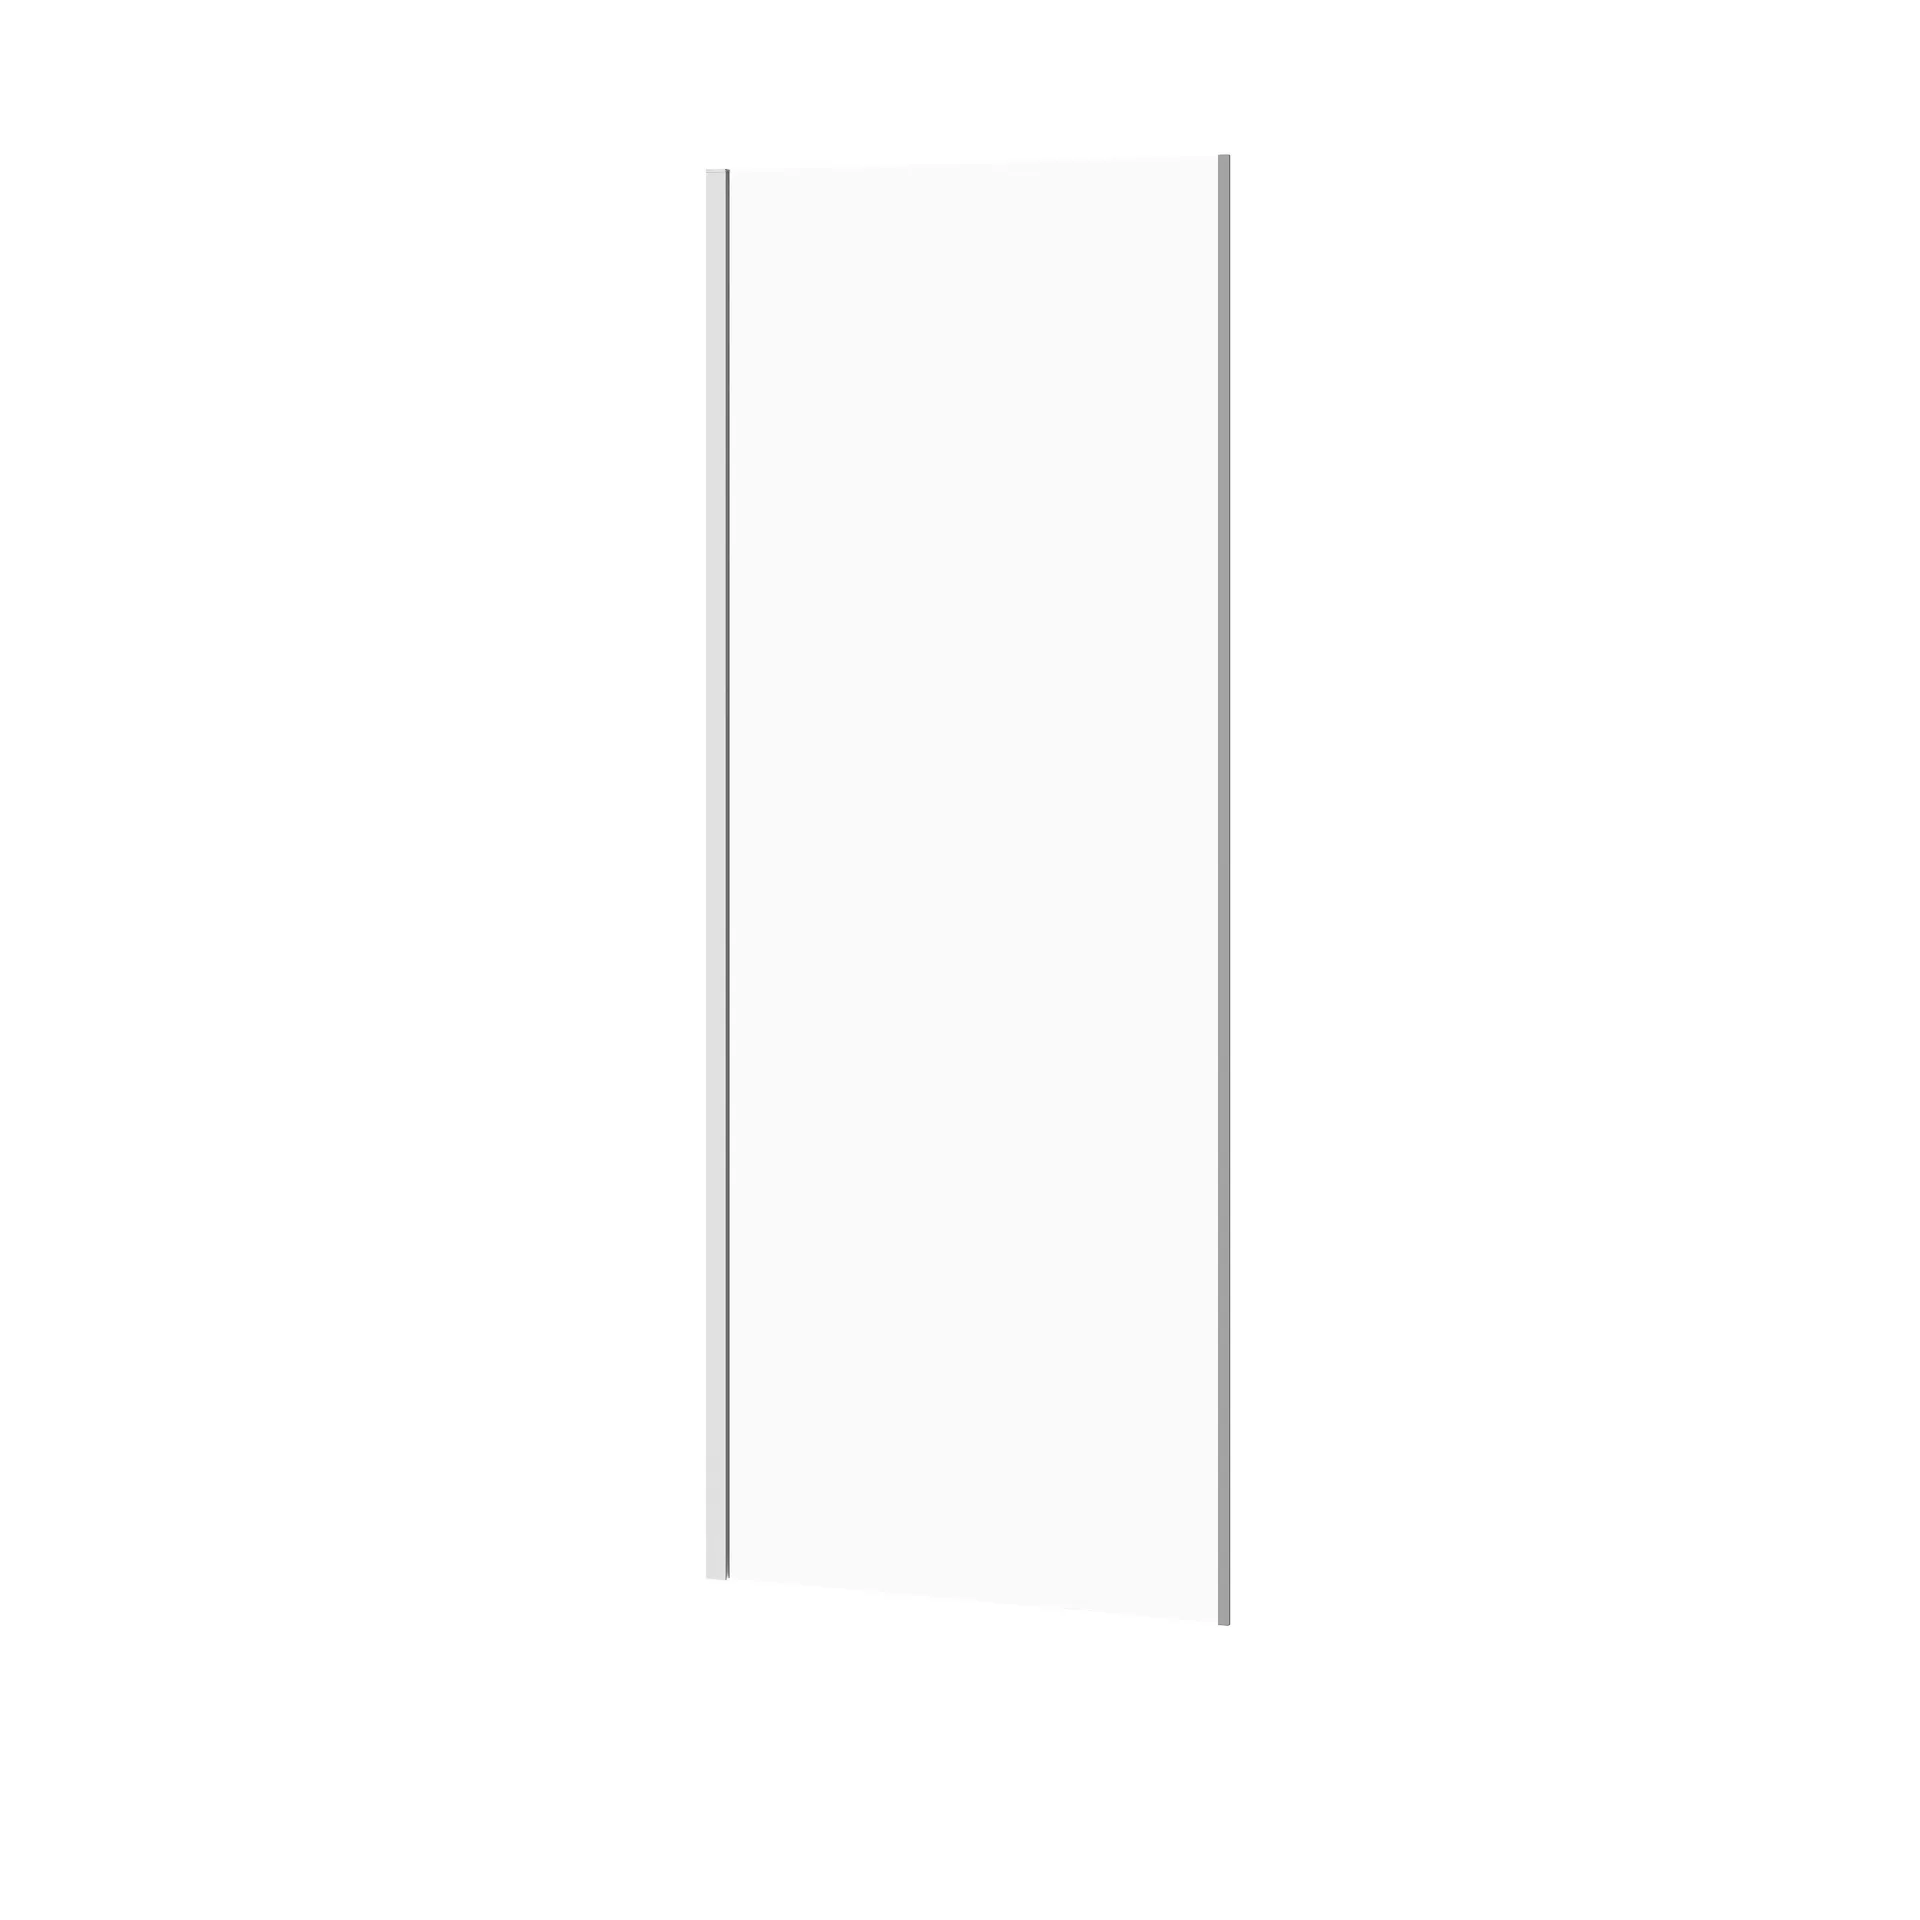 Ścianka kabiny prysznicowej Cersanit Crea 80x200 chrom transparentne S159-009